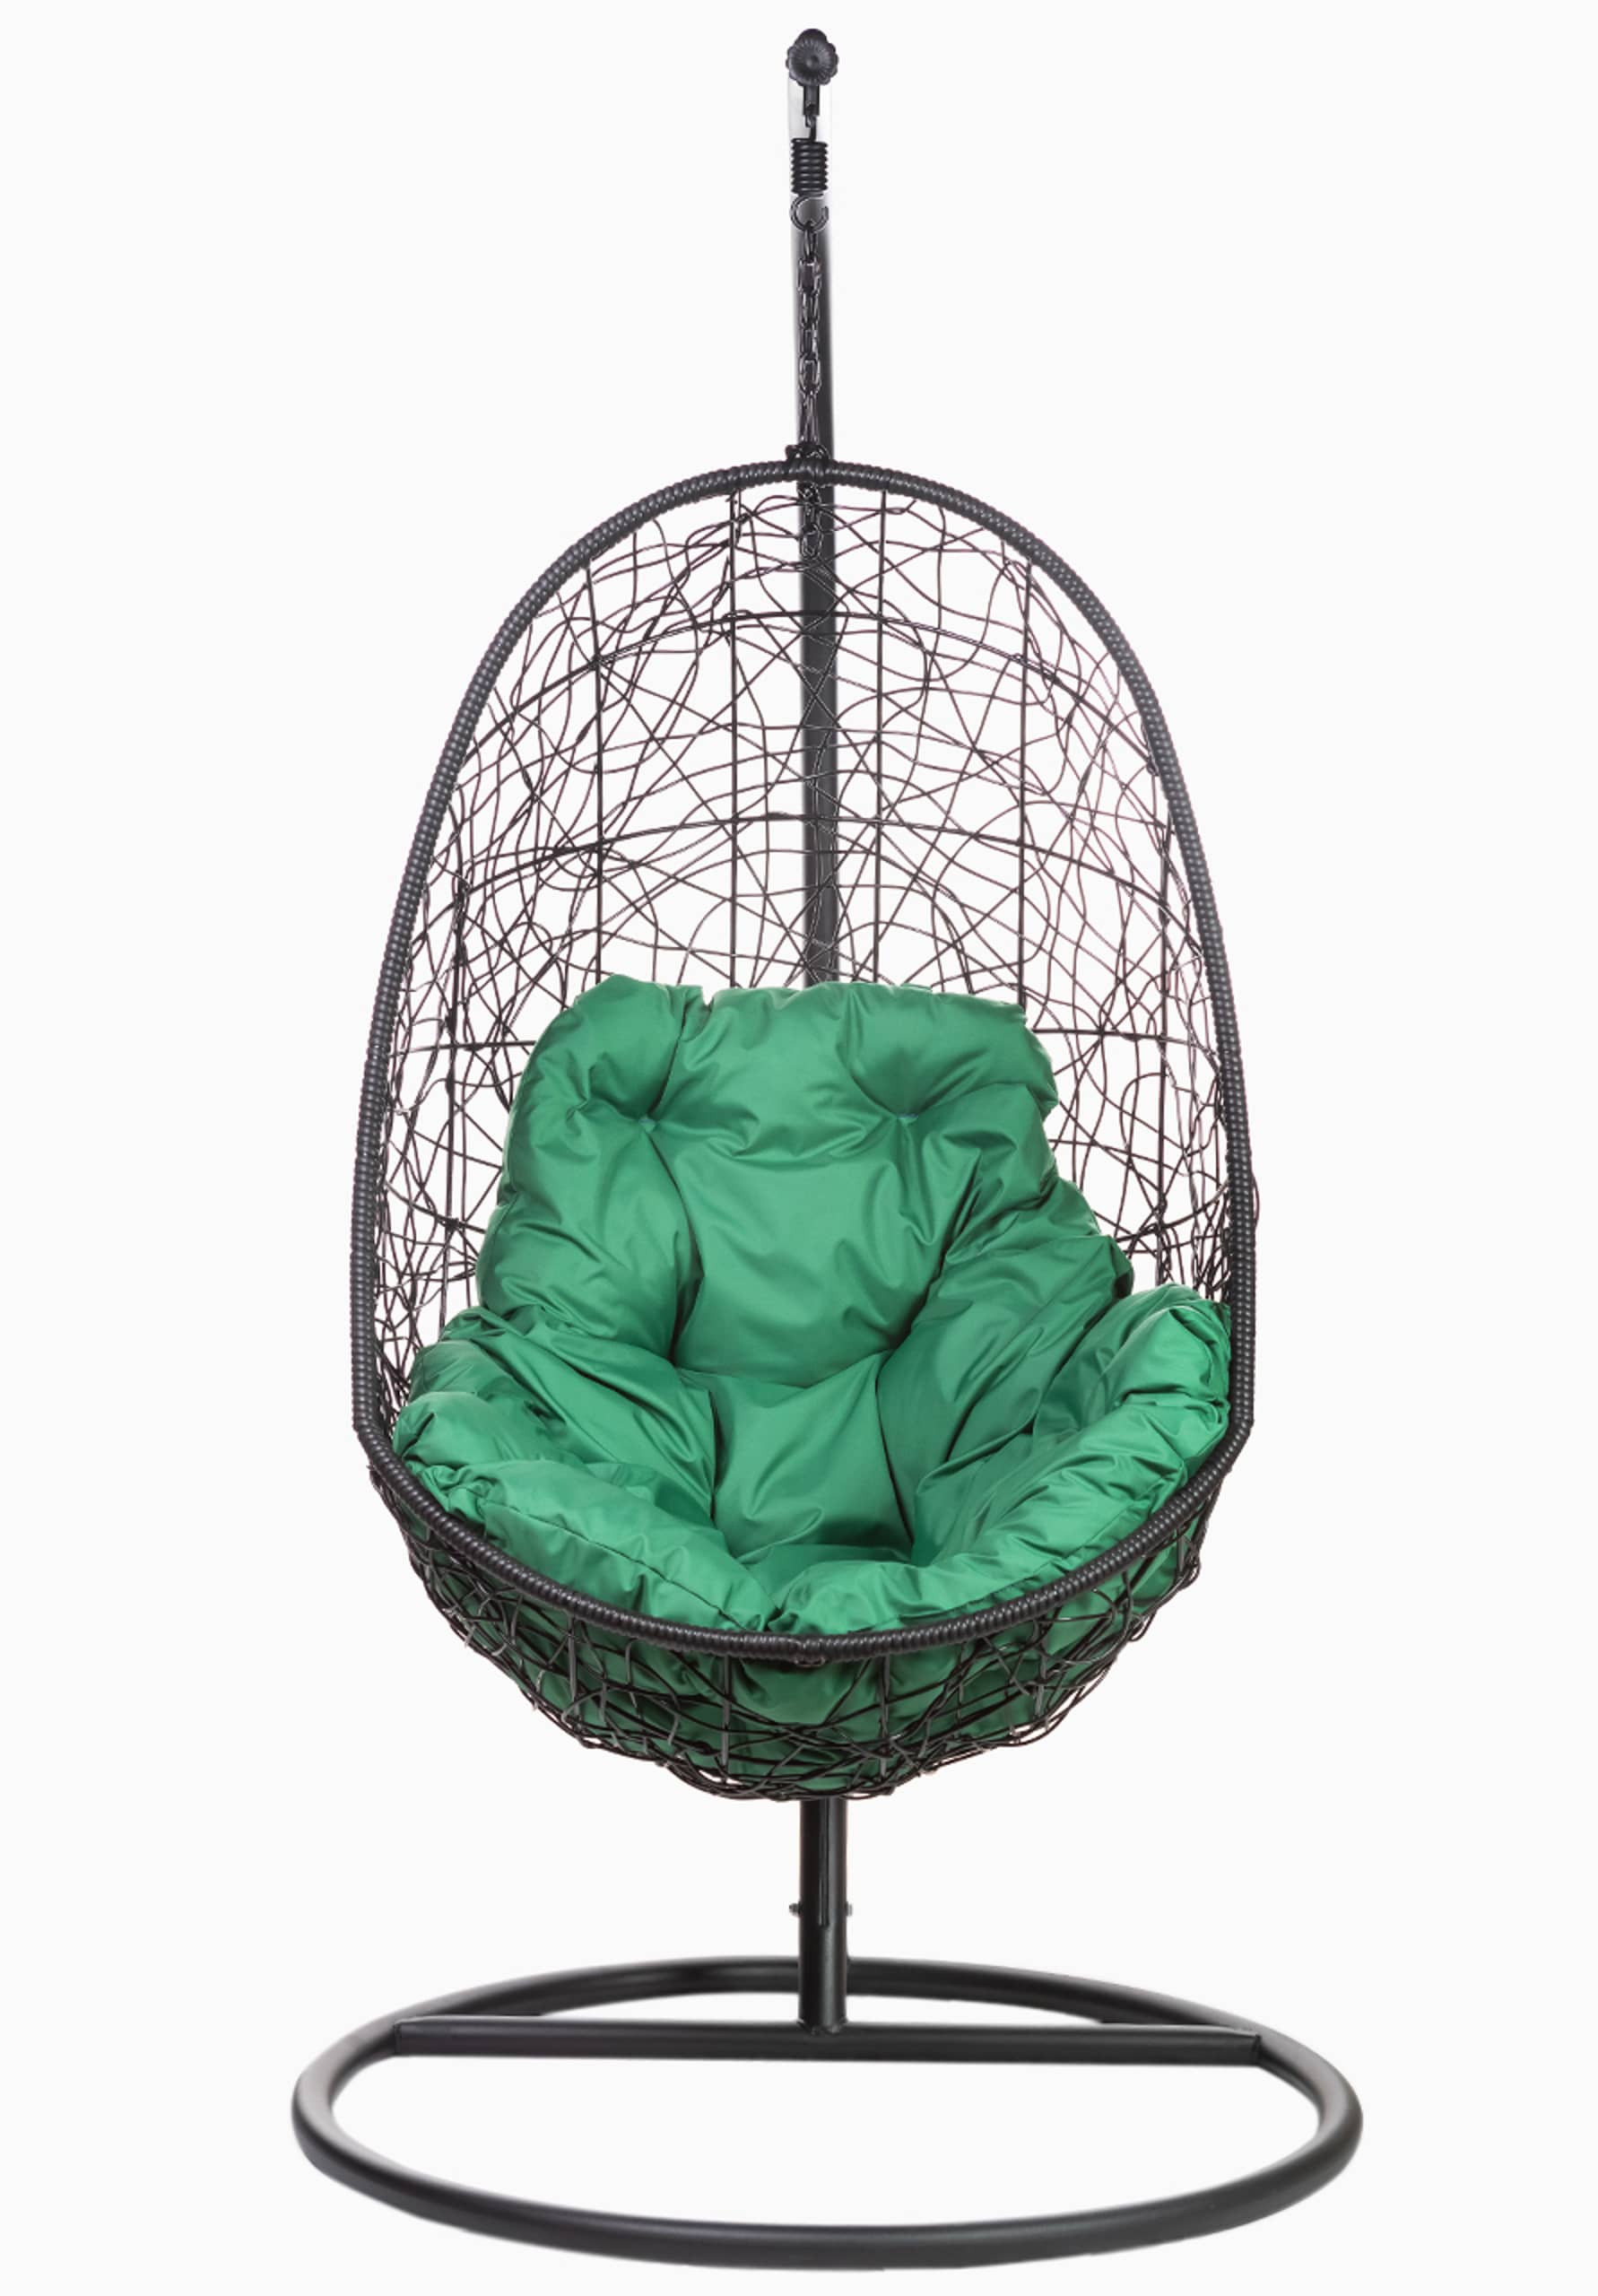 Кресло подвесное FP 0224 зеленая подушка - изображение 1